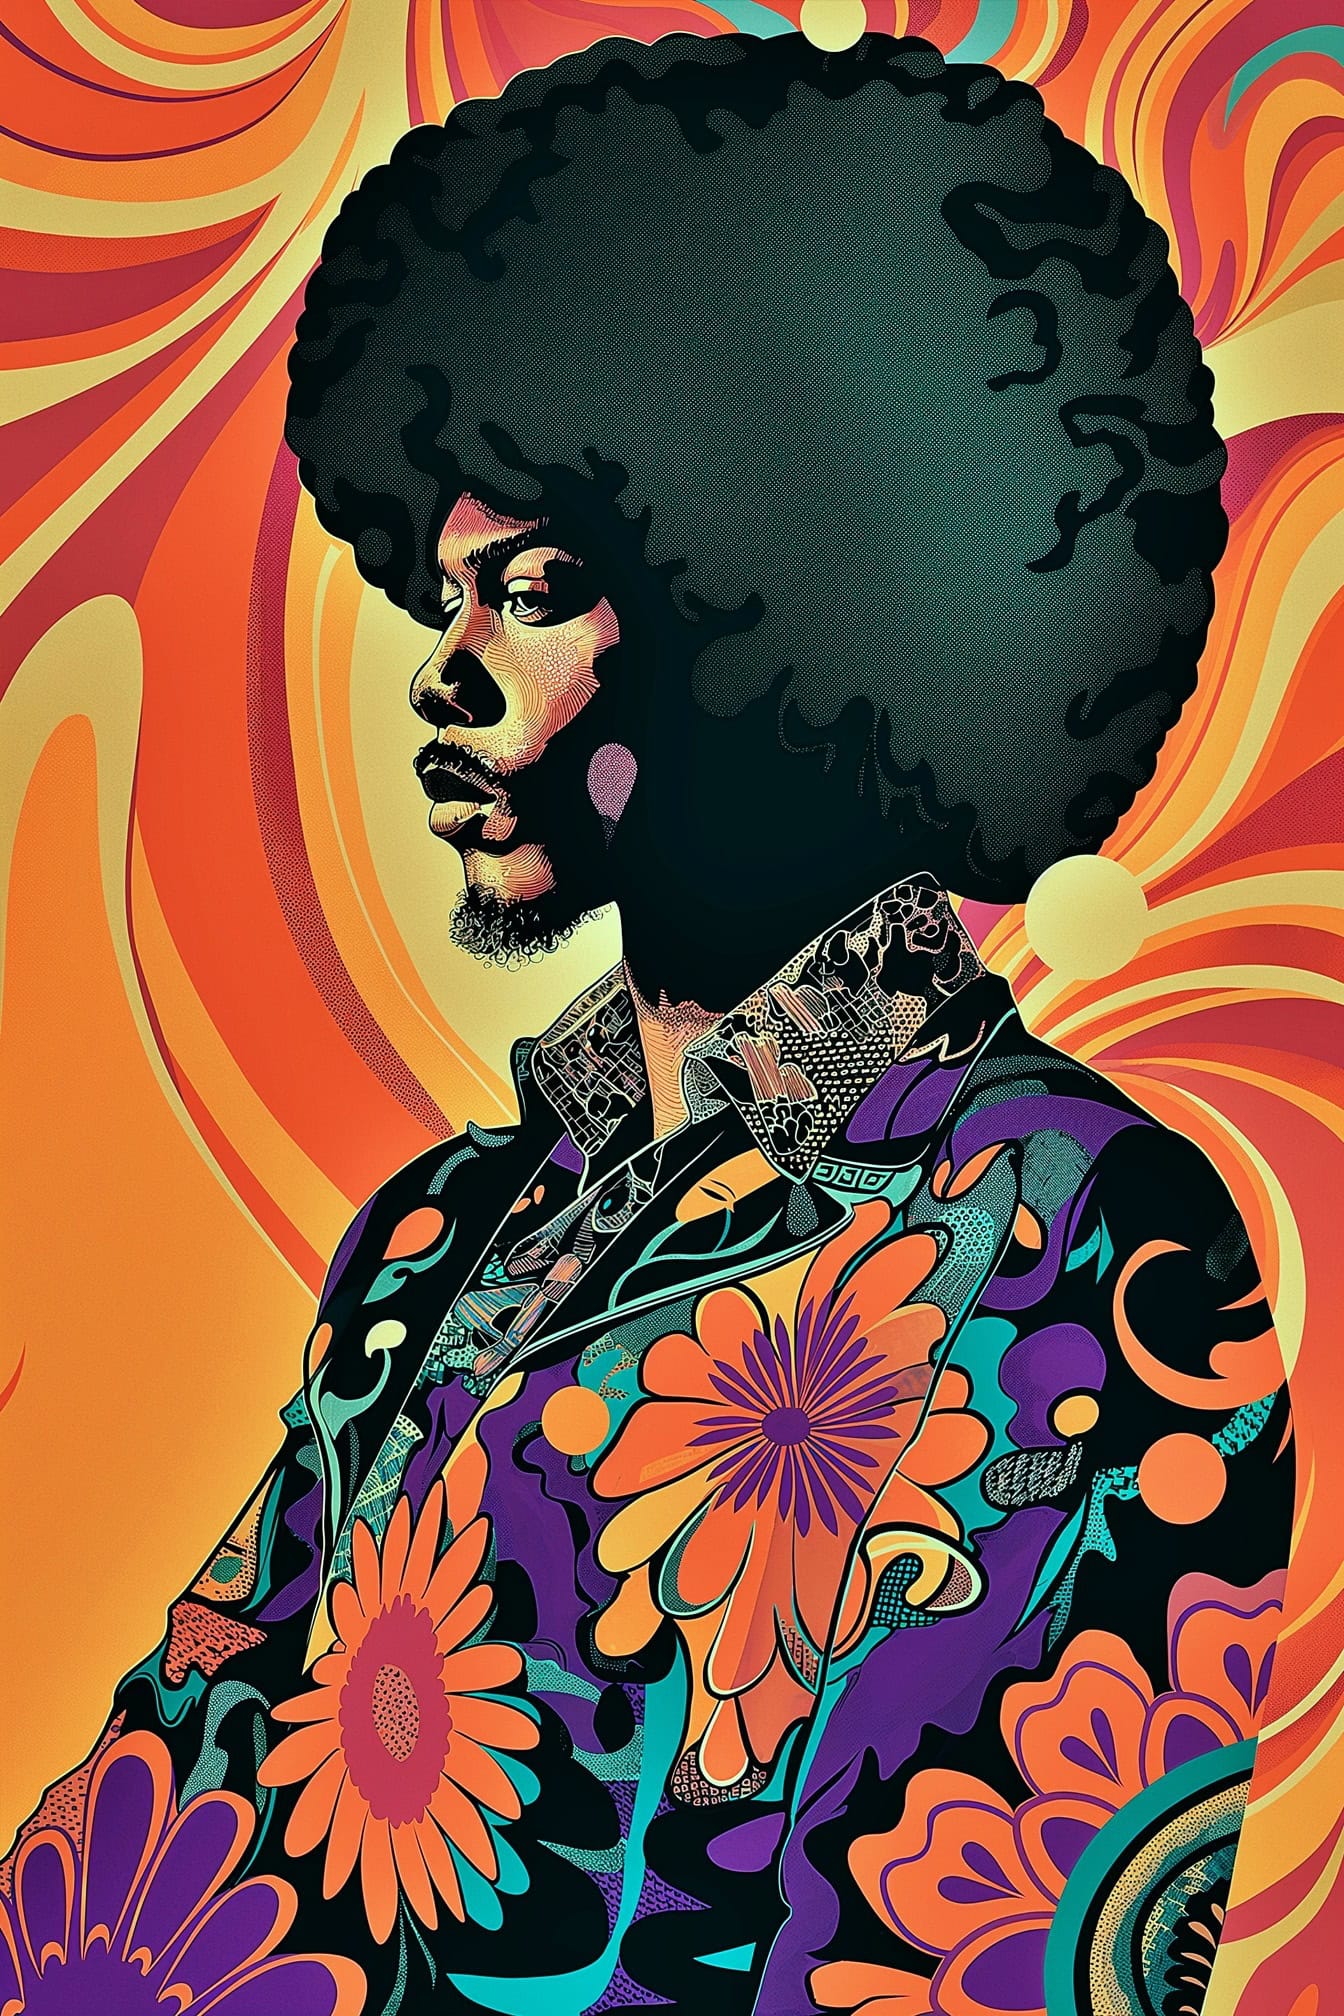 Pôster vibrante com retrato de Jimi Hendrix com um grande penteado afro e fundo abstrato no estilo pop art